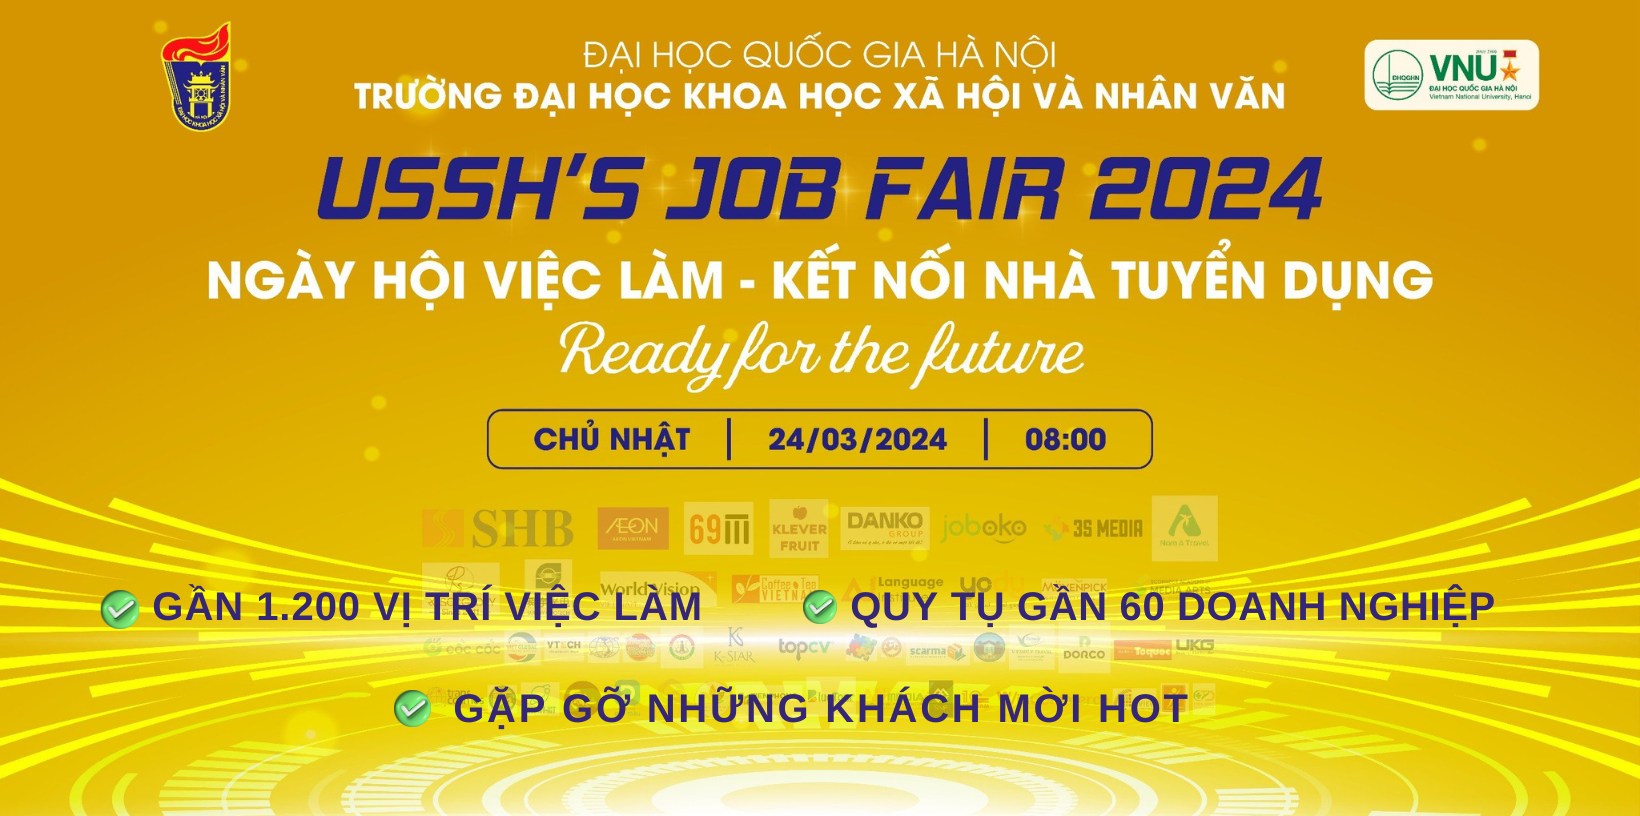 USSH JOB FAIR 2024 - Sôi động ngày hội việc làm, kết nối nhà tuyển dụng năm 2024